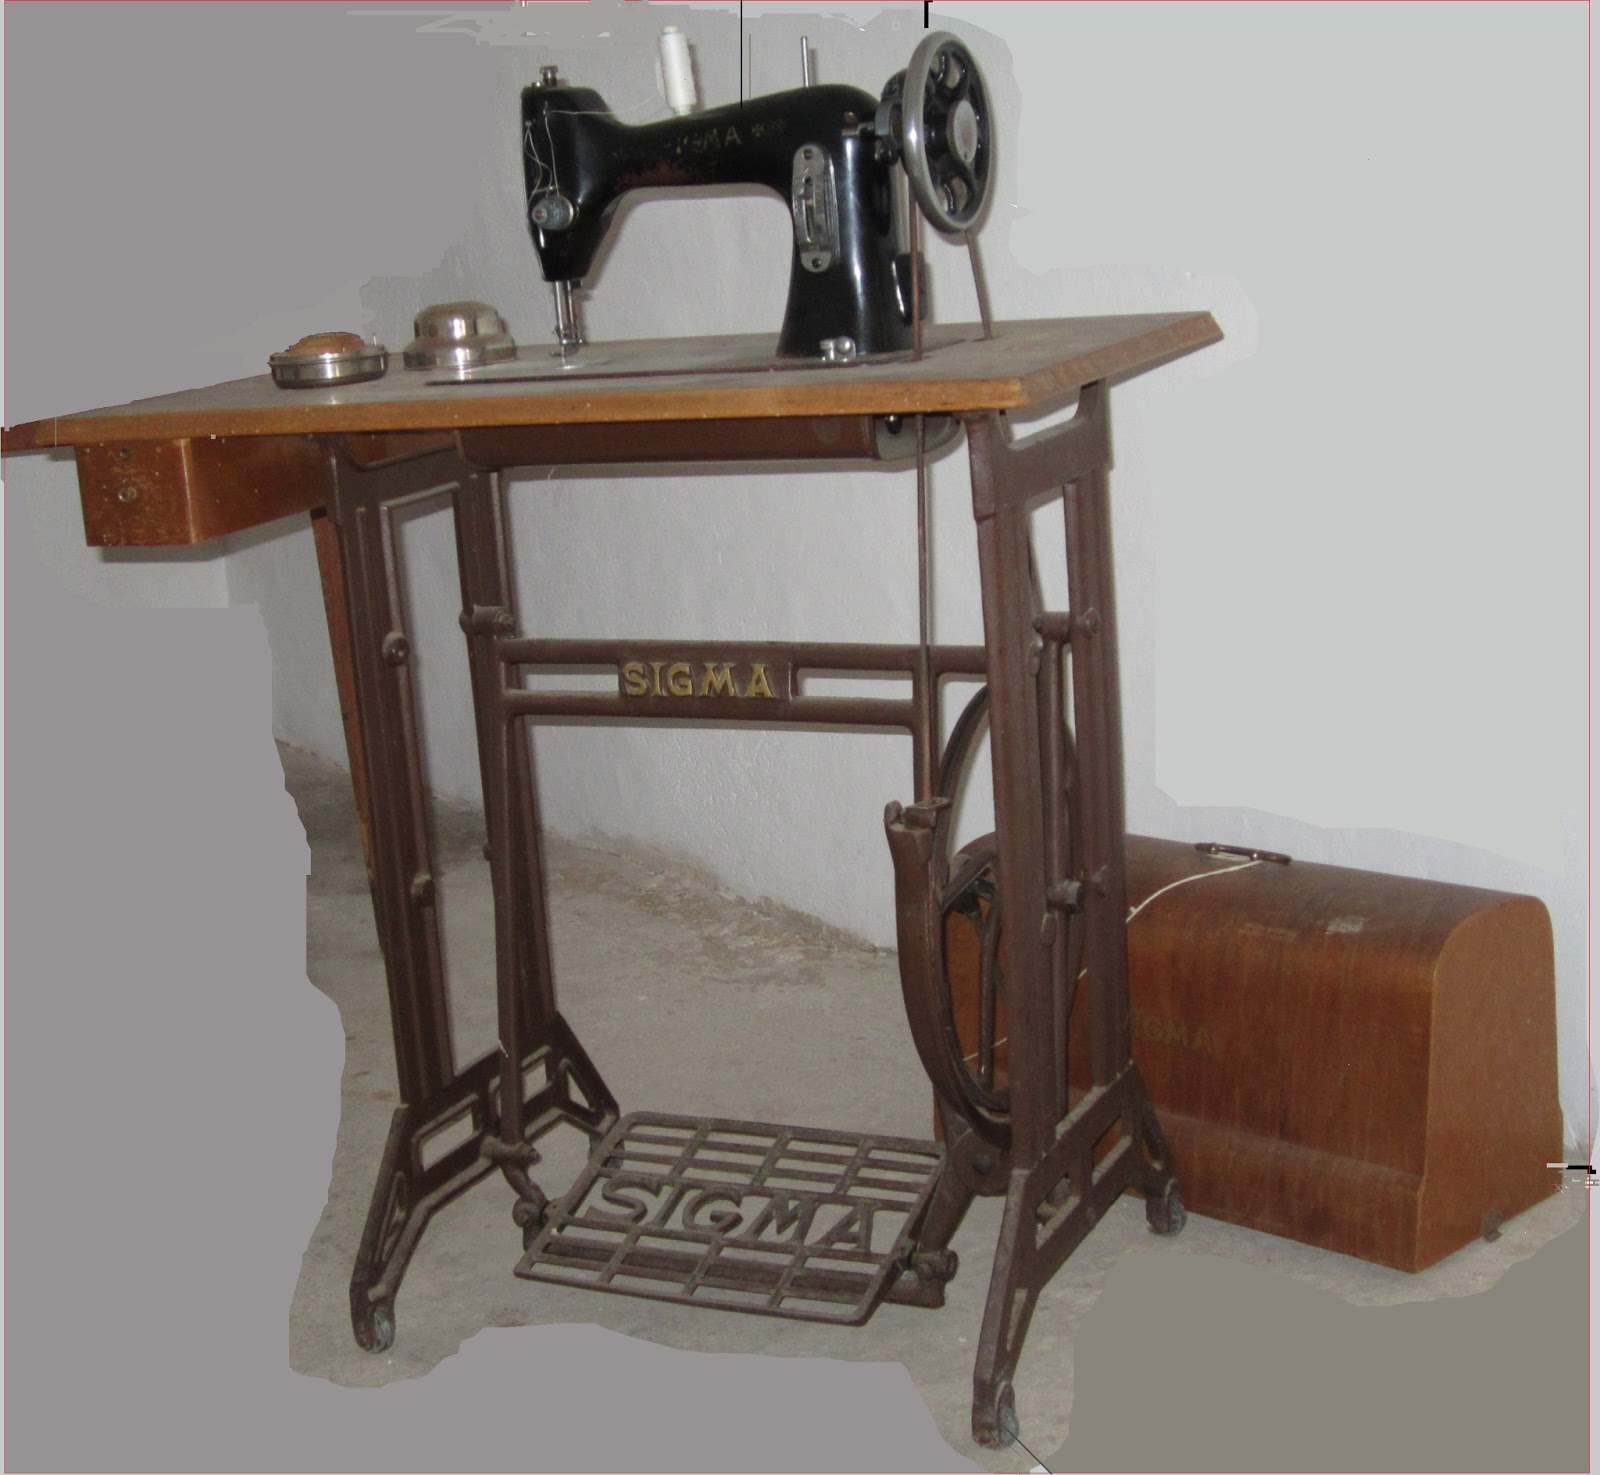 Mis experiencias mis imágenes: Máquina de coser antigua, Sigma.